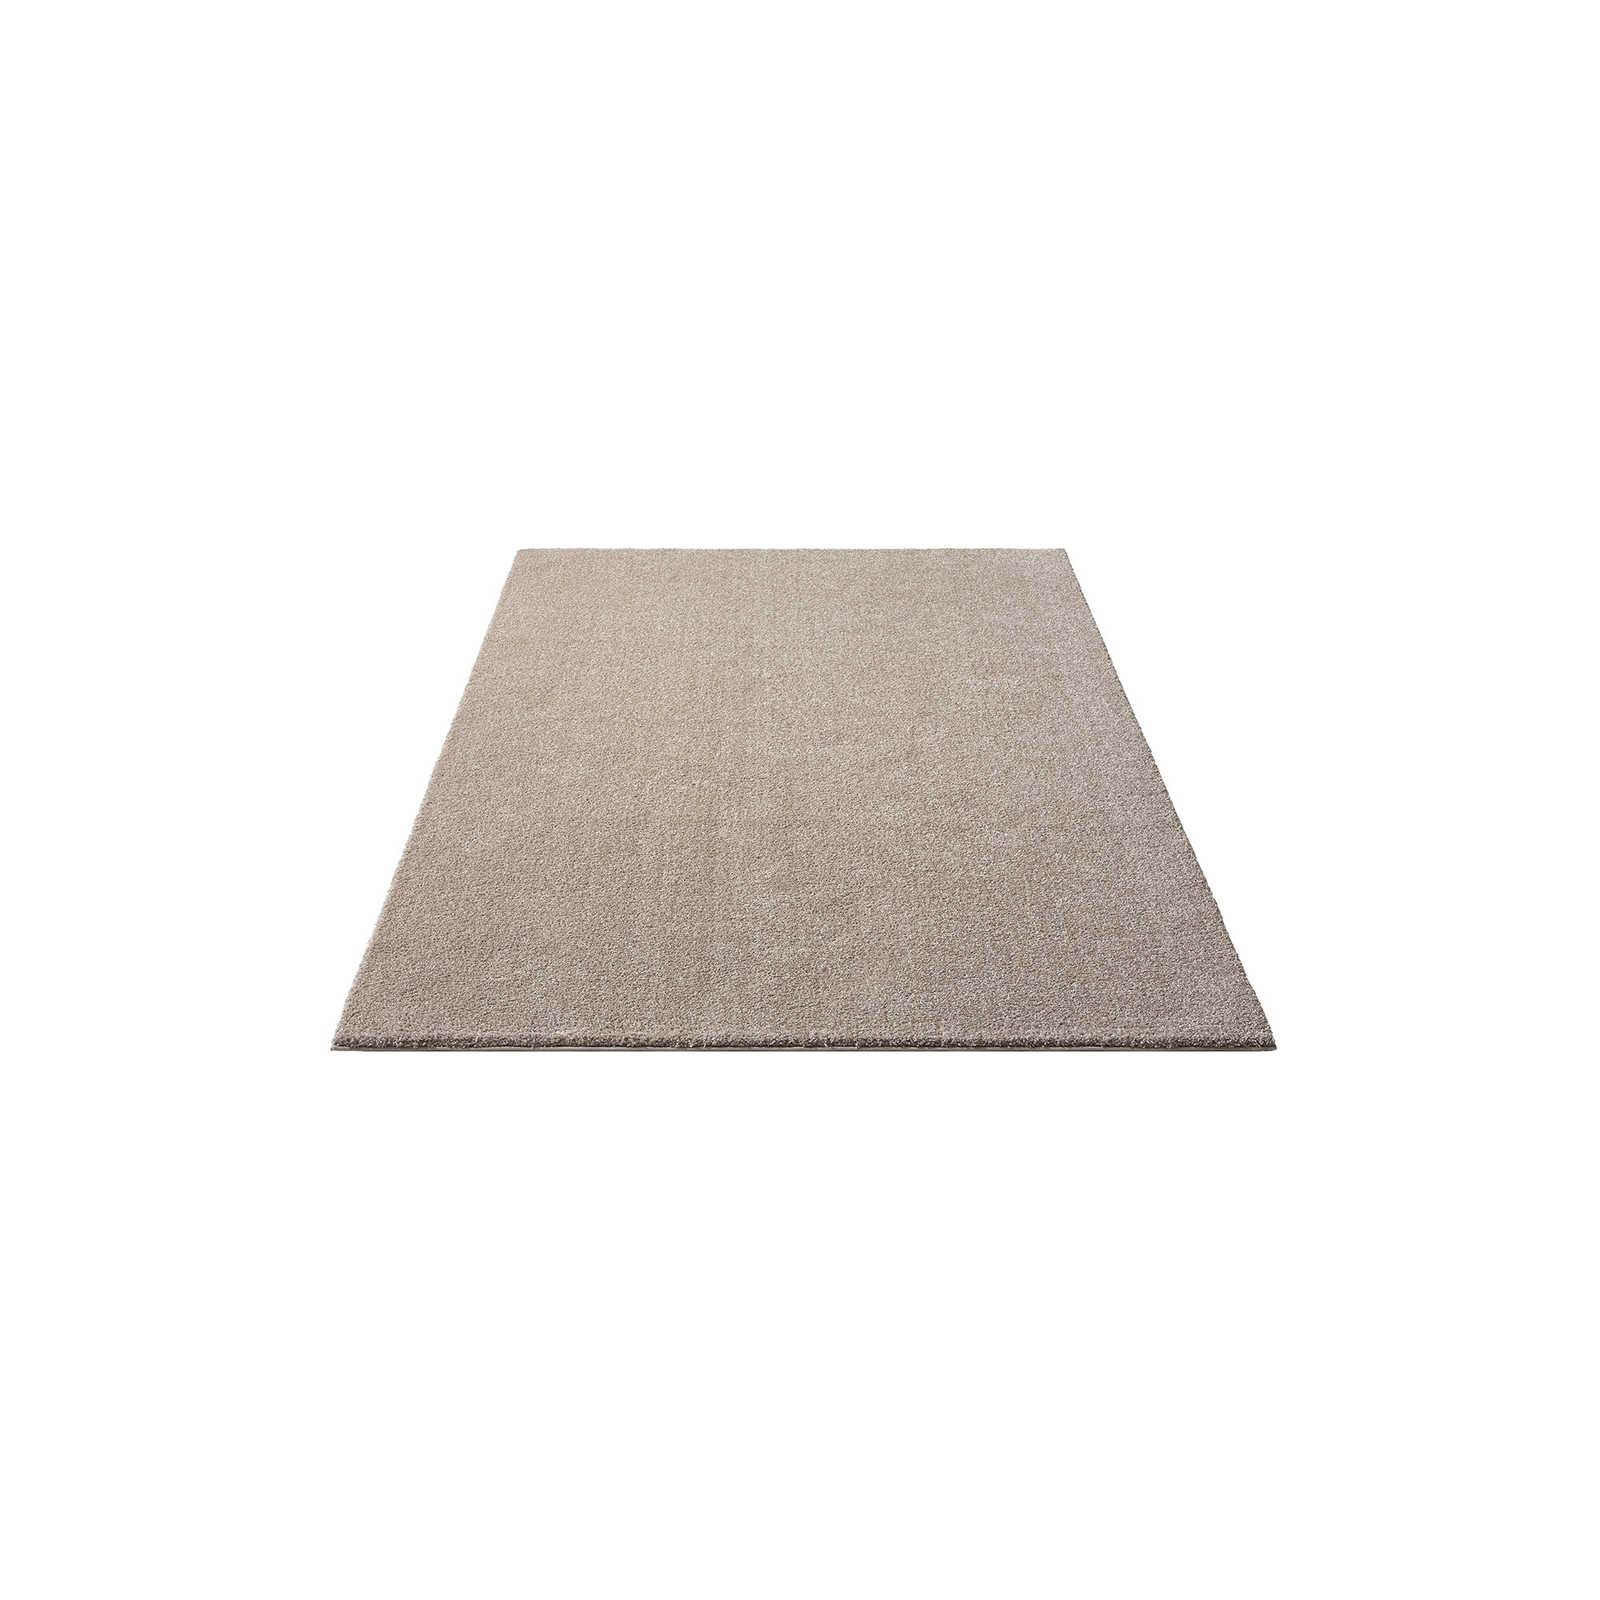 Zacht kortpolig tapijt in beige - 170 x 120 cm
